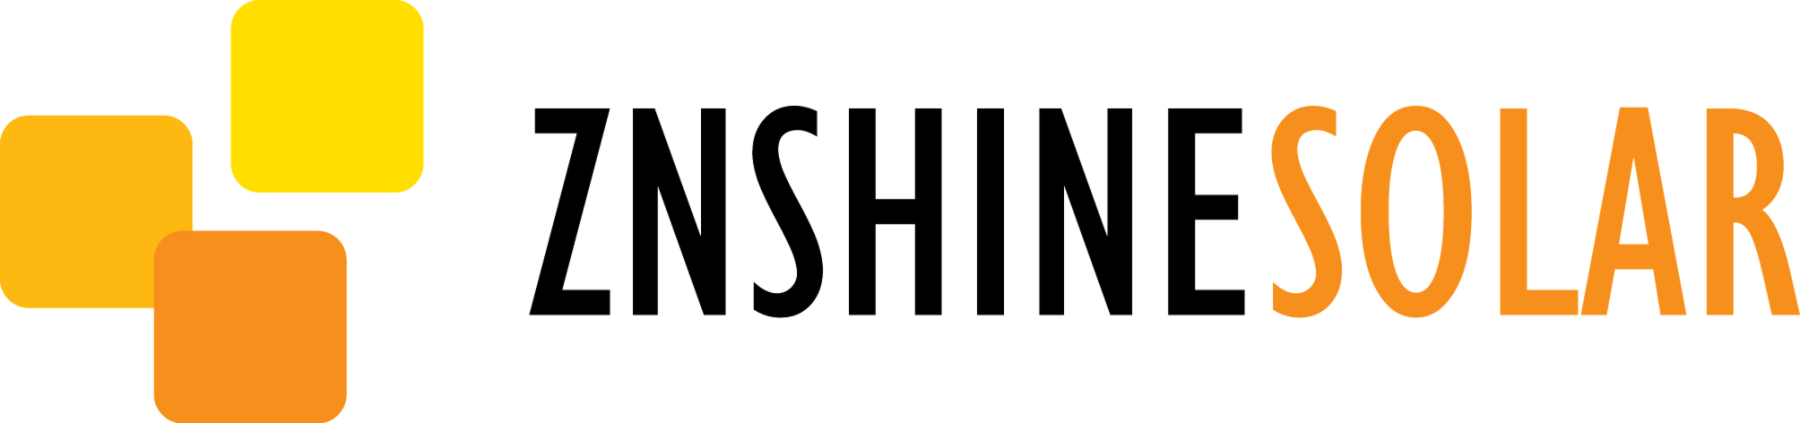 Znshine Solar Logo